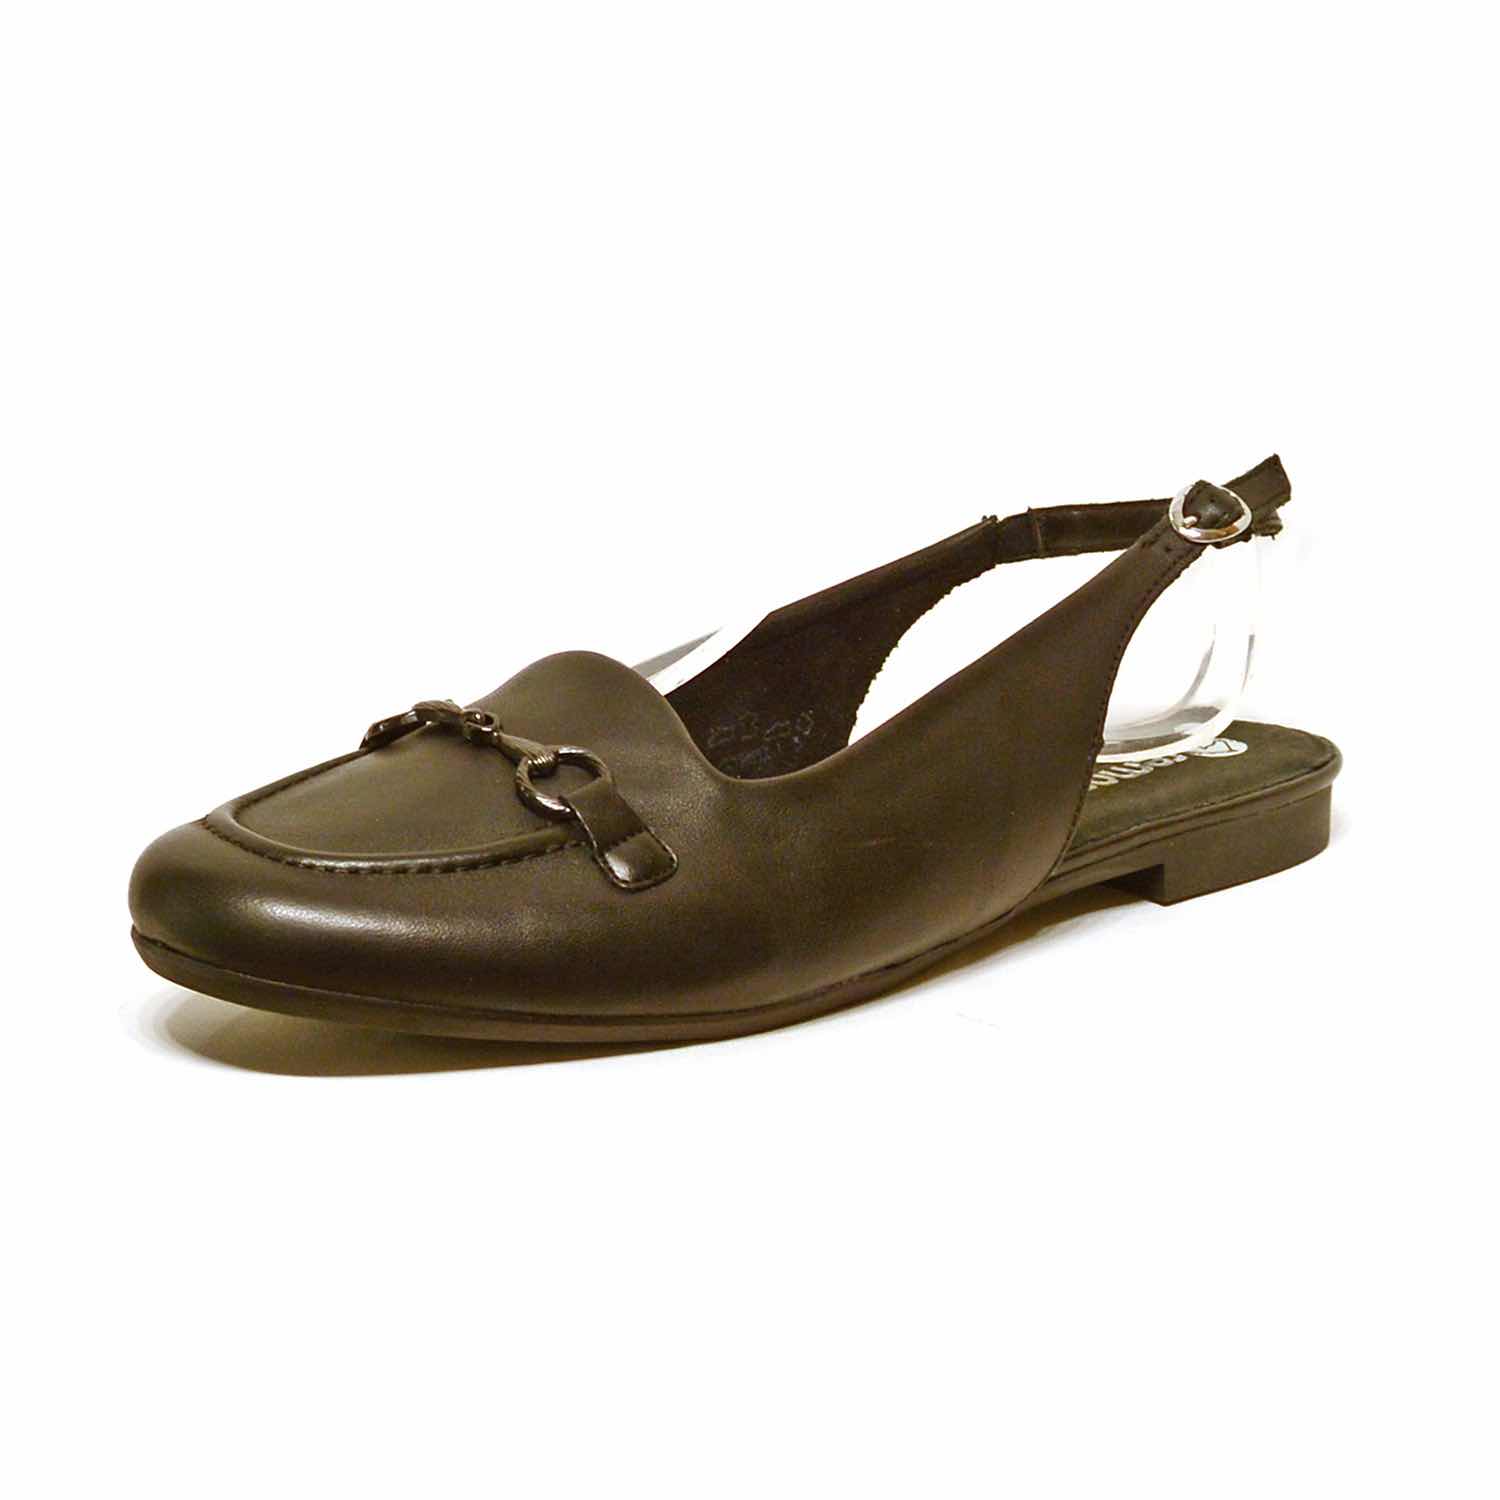 sandales femme grande taille du 40 au 48, cuir lisse noir, talon de 0,5 à 2 cm, mode habillee plates sandales plates detente, chaussures pour l'été